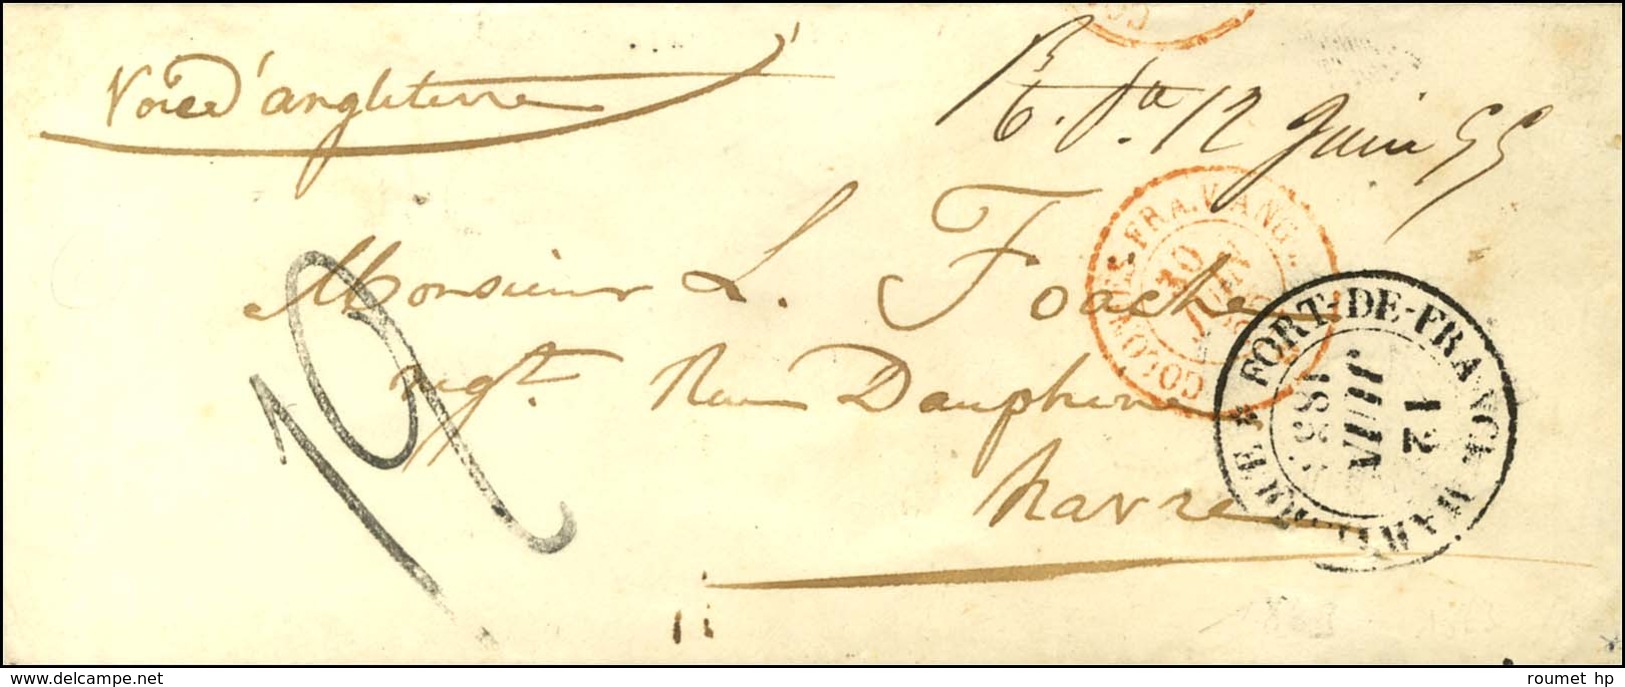 Marque Manuscrite '' R.Pe 12 Juin 55 '' (Rivière Pilote) (J N°1) Sur Enveloppe Pour Le Havre. Au Recto, Càd FORT DE FRAN - Maritime Post